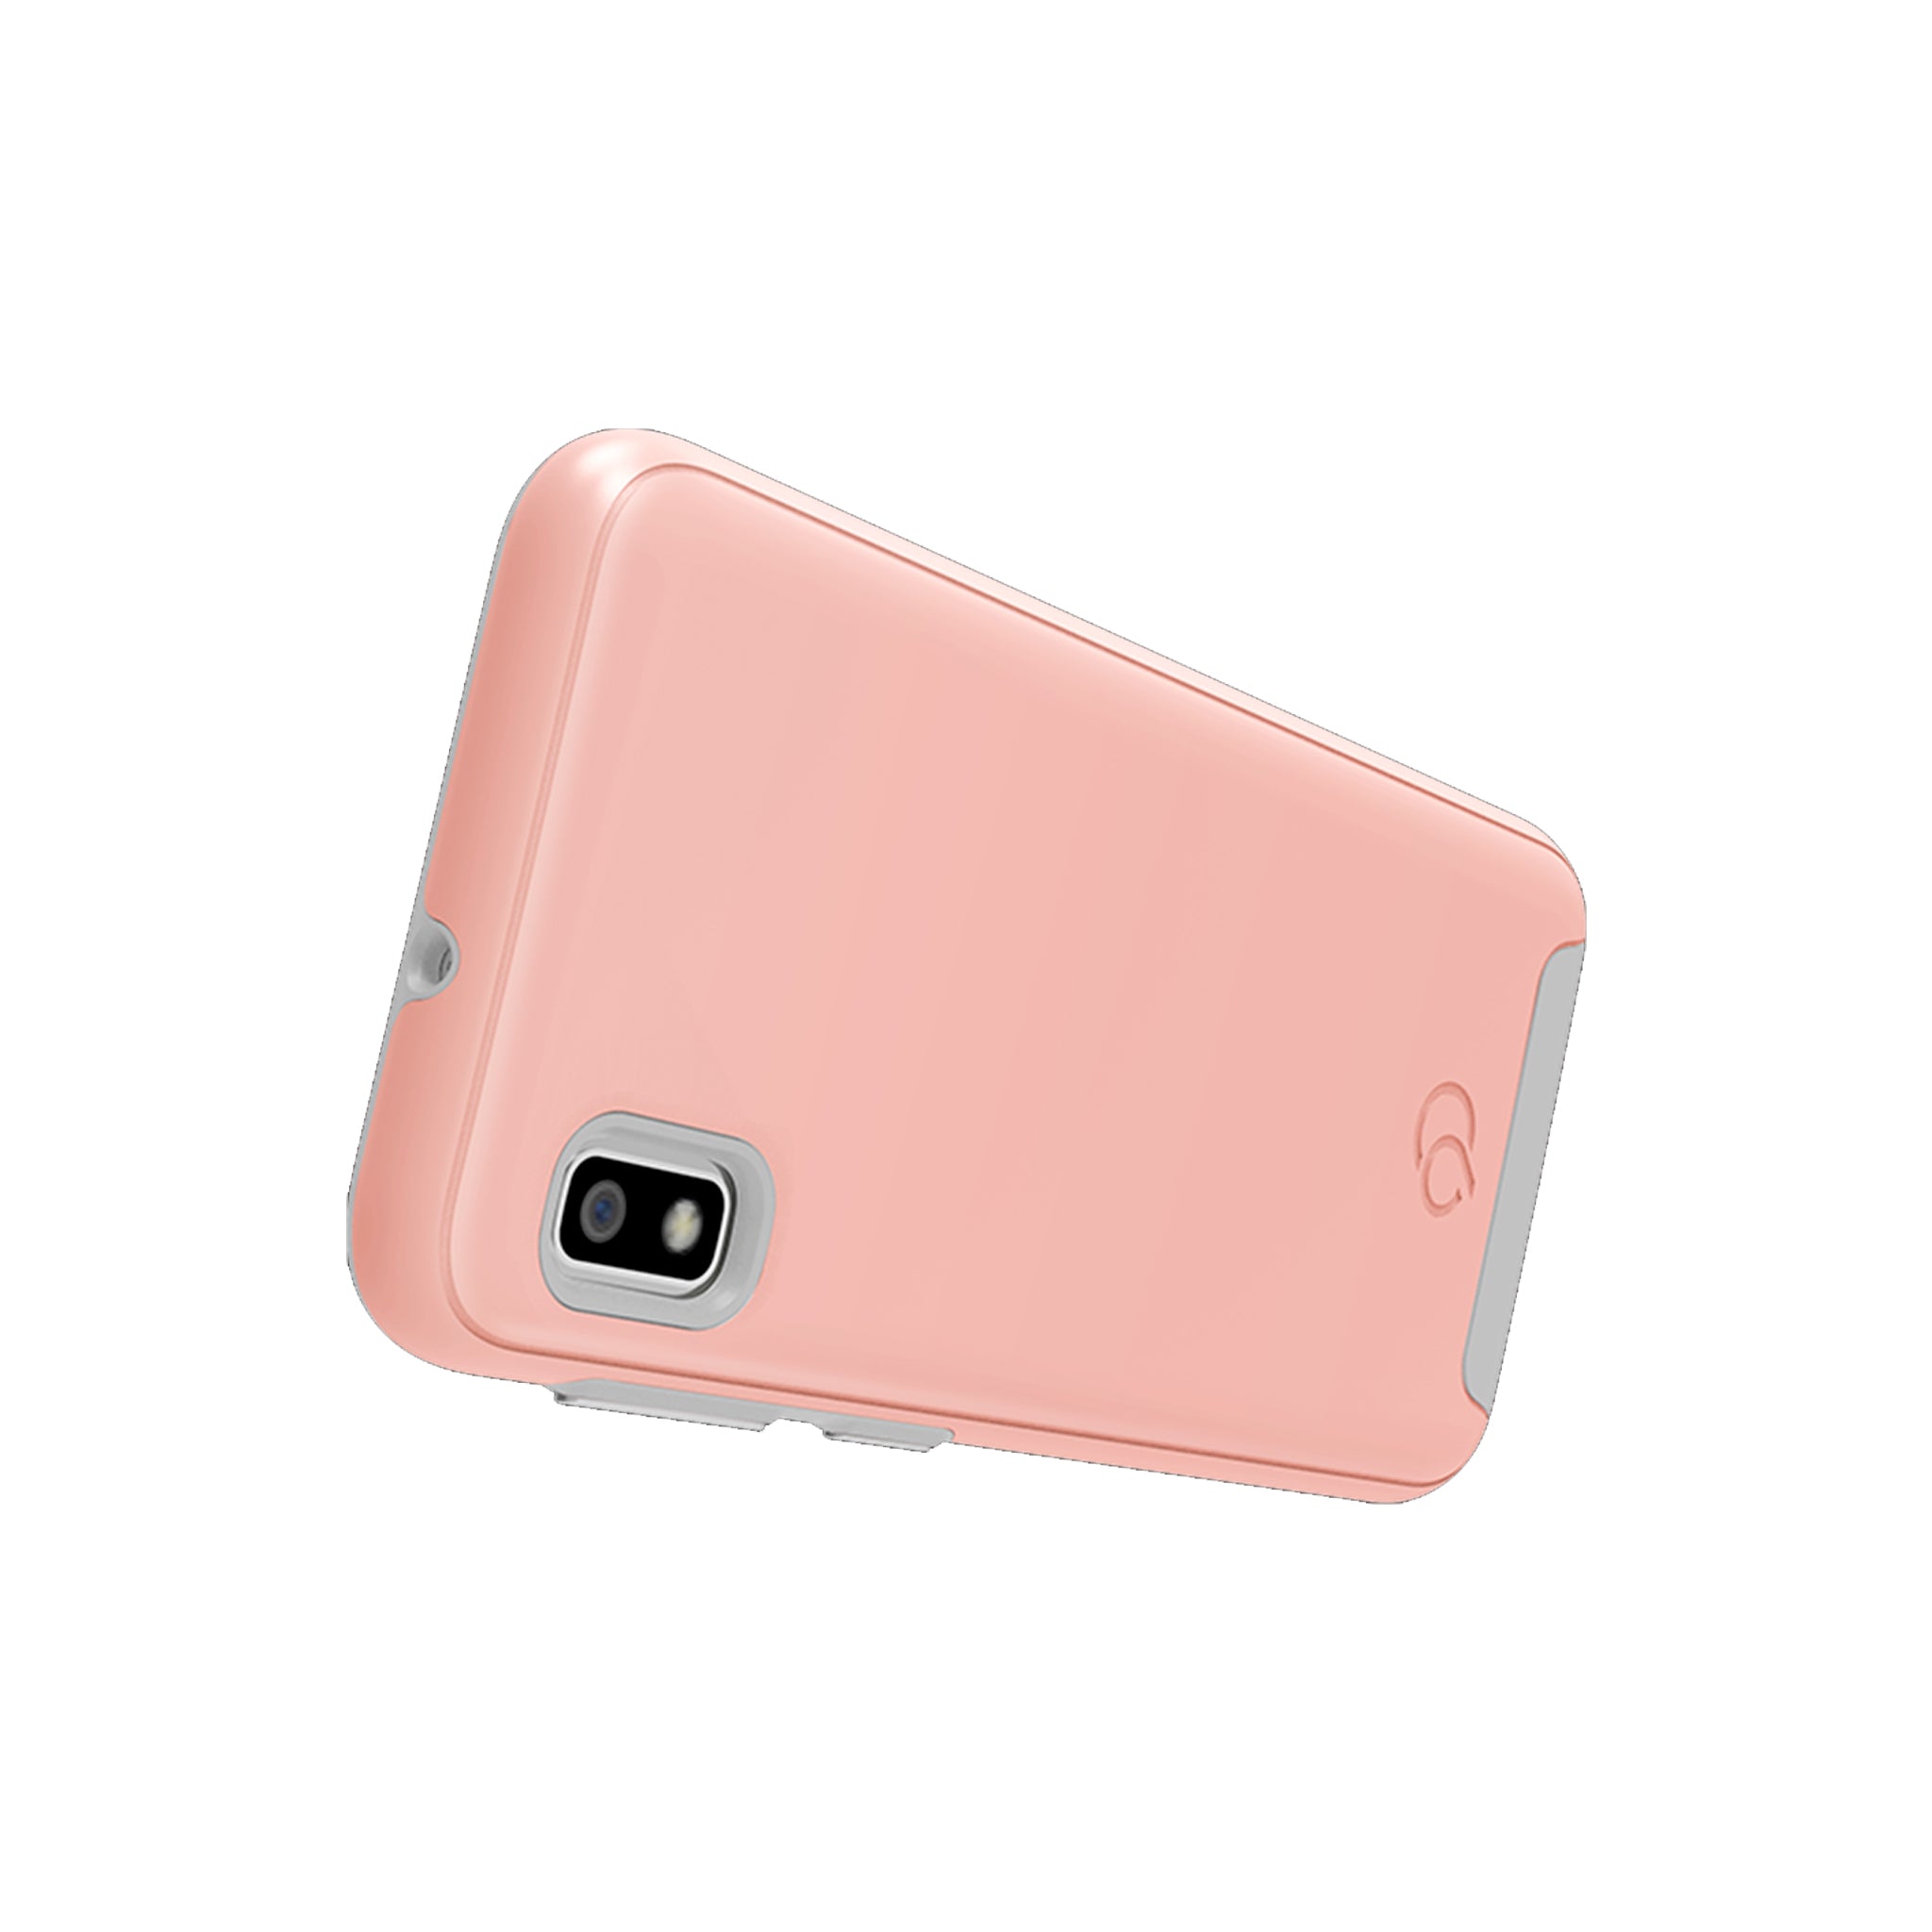 Nimbus9 - Cirrus 2 Case For Samsung Galaxy A10e - Rose Clear